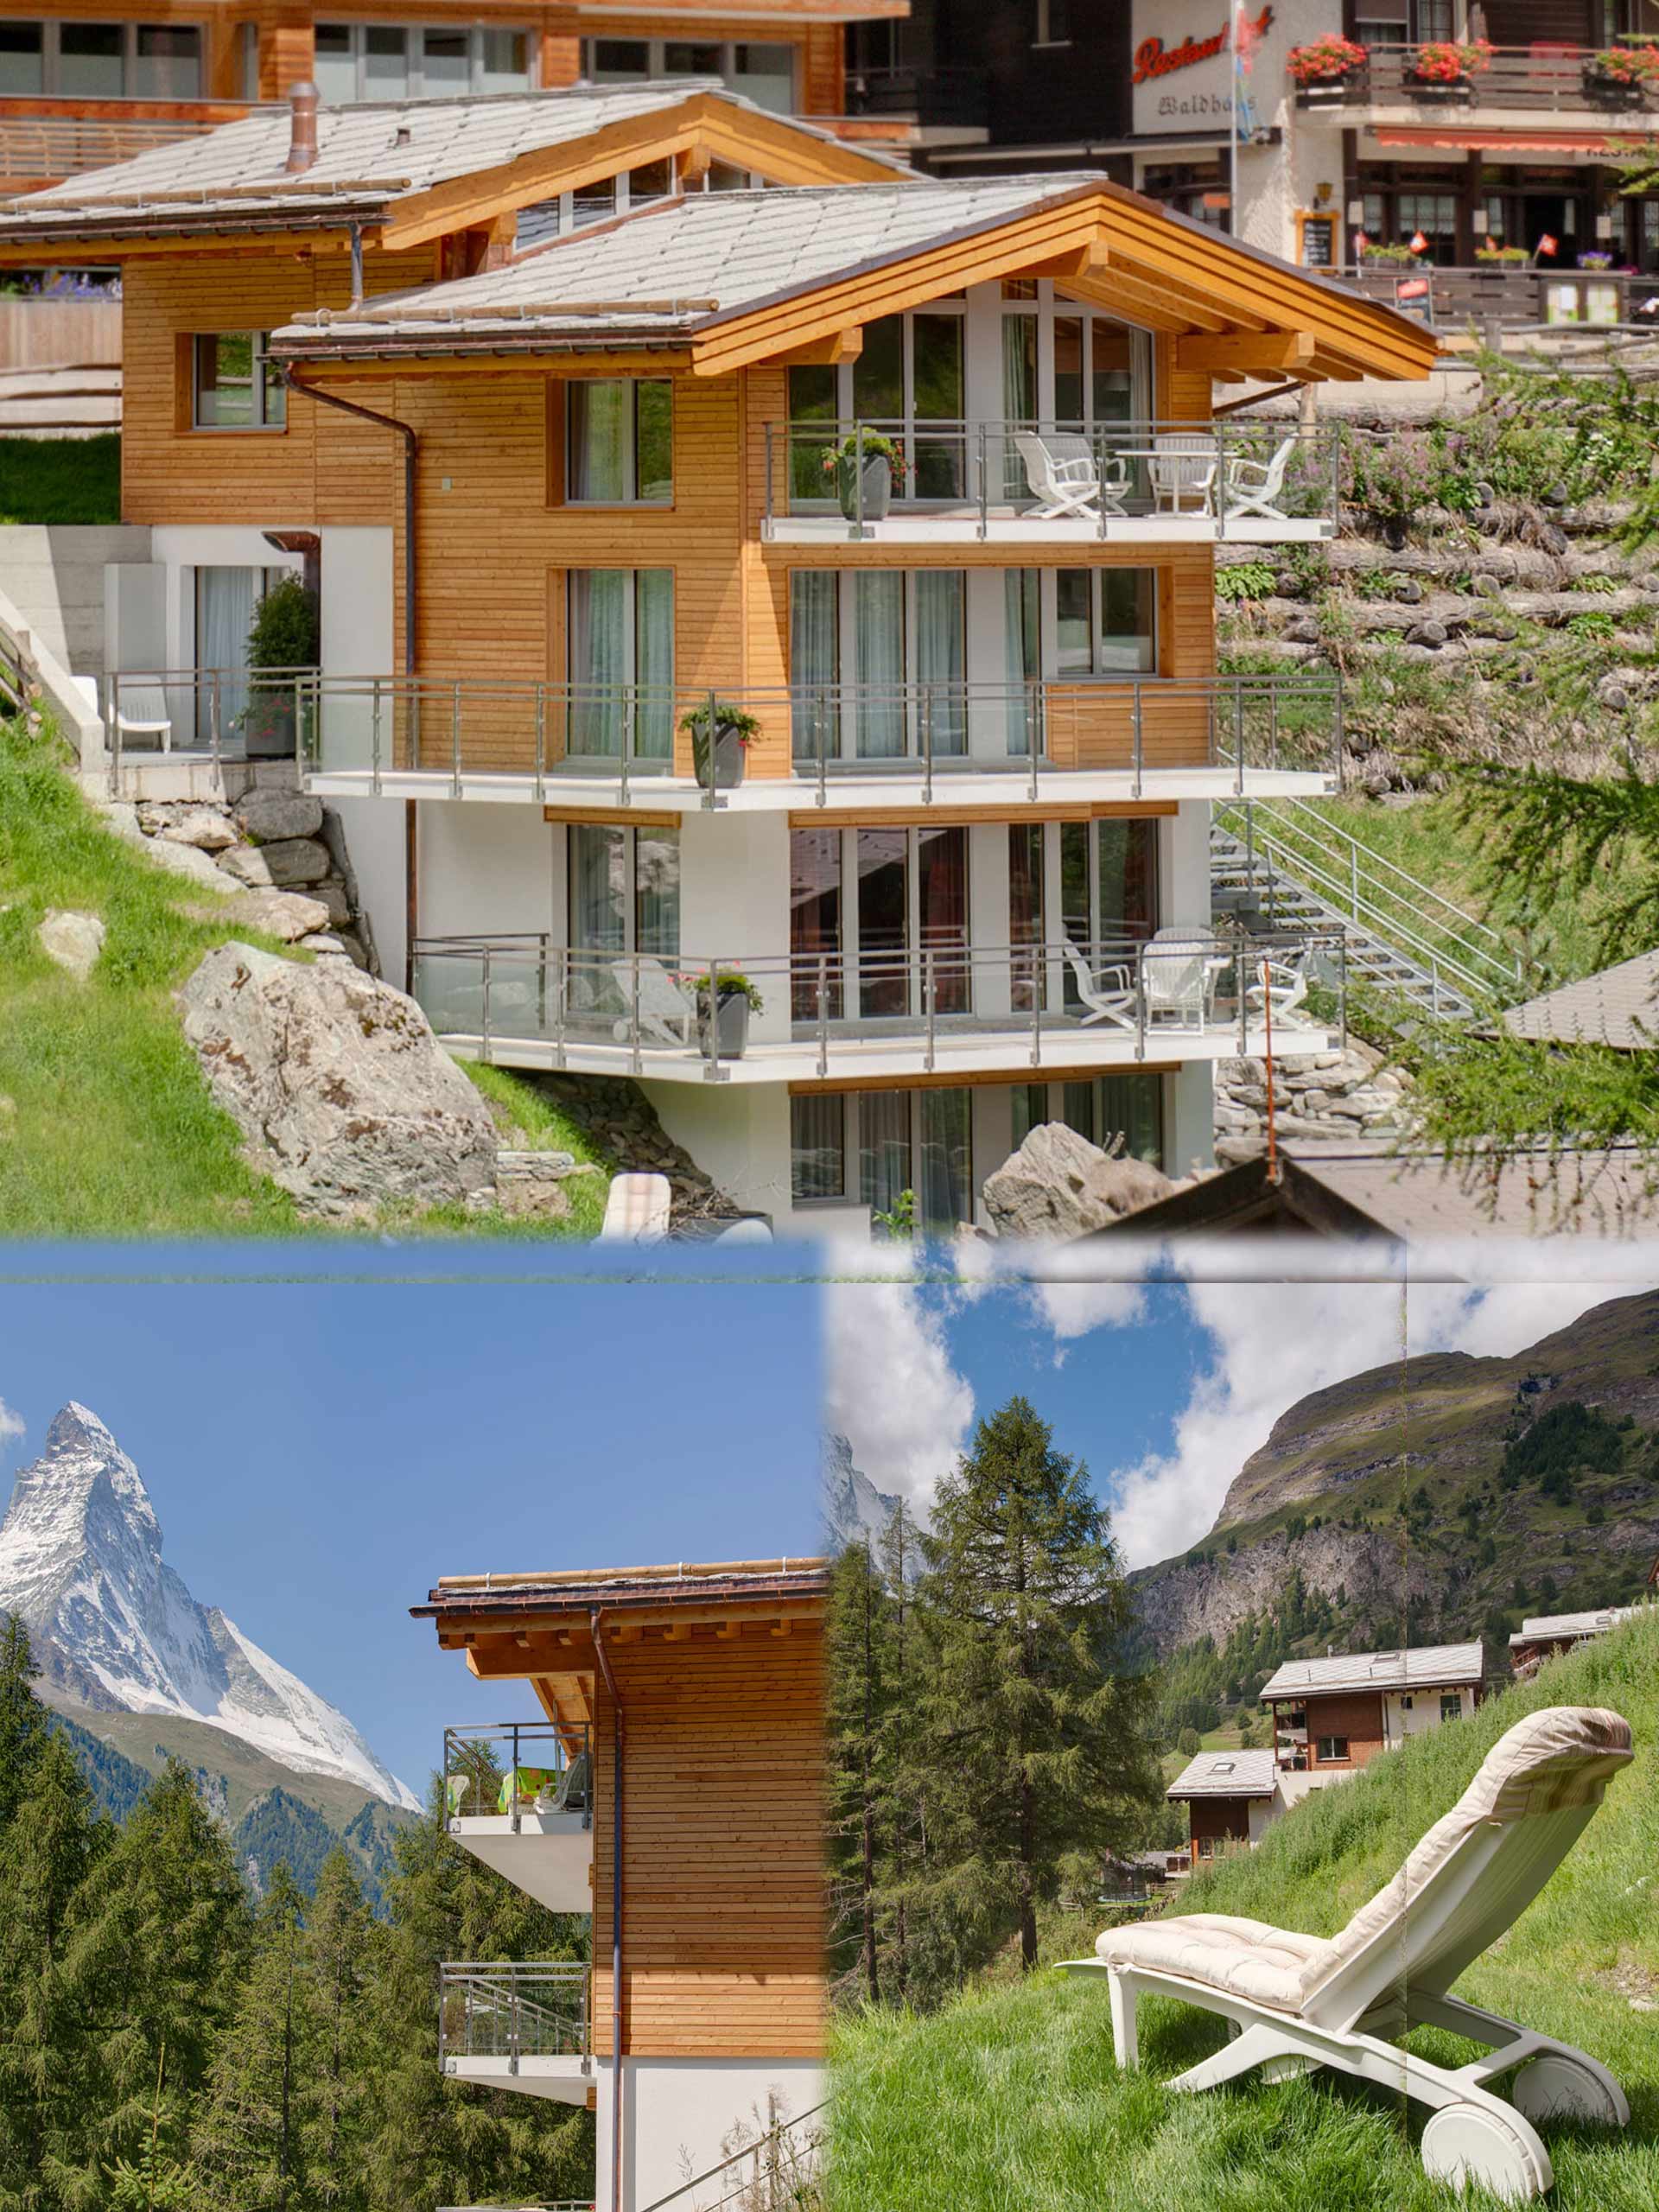 Haus Gloria finden Sie in Winkelmatten. Der Ortsteil liegt inmitten blumiger Wiesen auf 1700 m HÃ¶he und ist ein Ortsteil von Zermatt, im SÃ¼den des Dorfes an die Sonnenseite des Hangs gebaut.